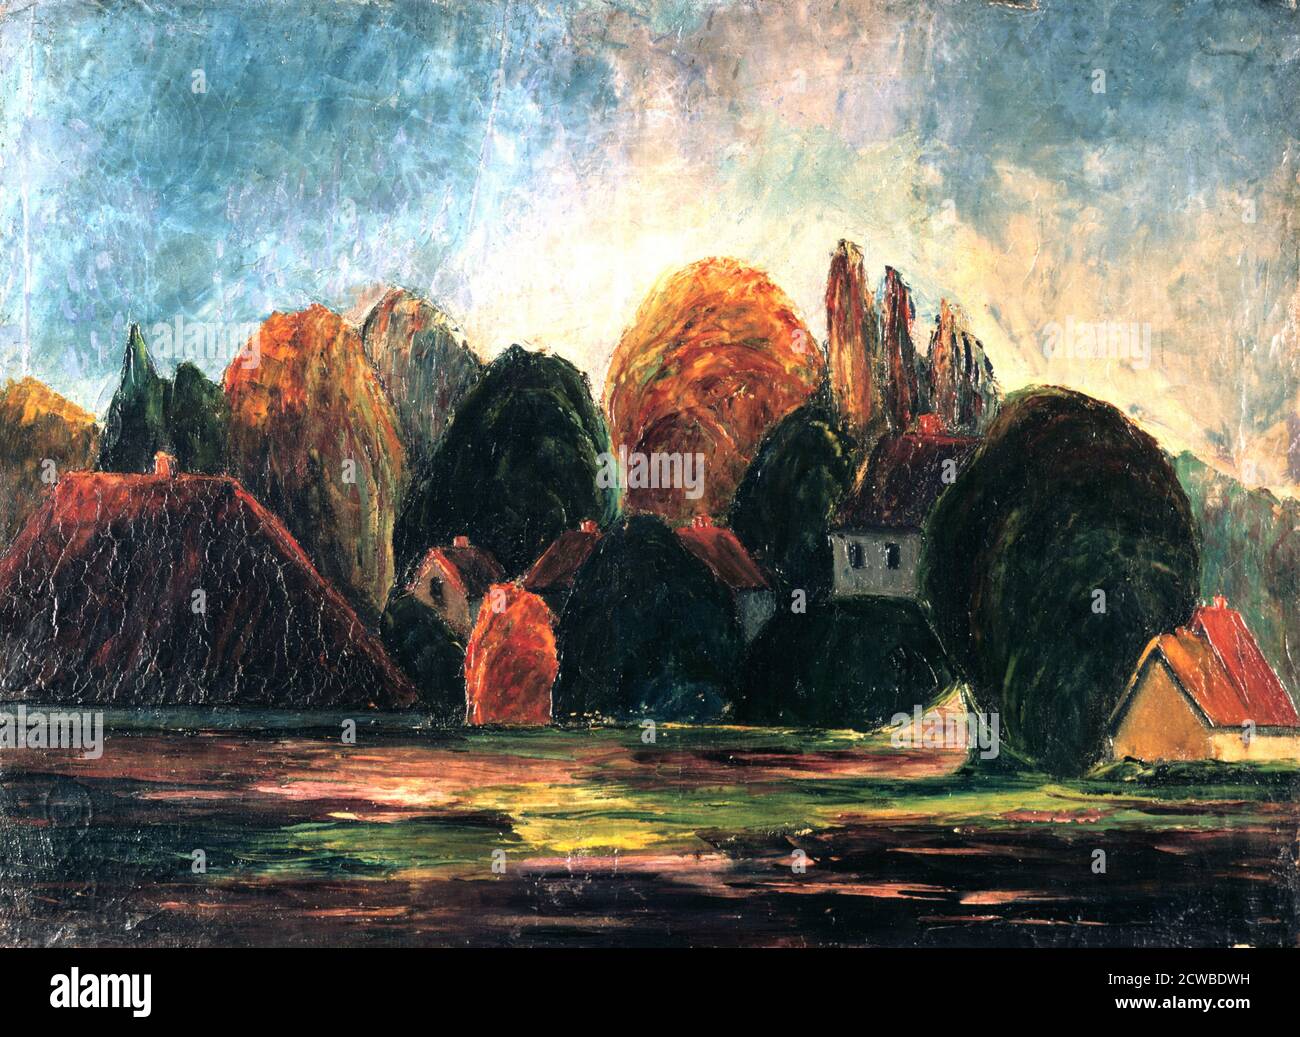 Norwegian Passage', c1900. Künstler: Edvard Munch. Edvard Munch ist ein norwegischer Maler, Expressionist und Drucker. Er spielte eine große Rolle im deutschen Expressionismus. Stockfoto